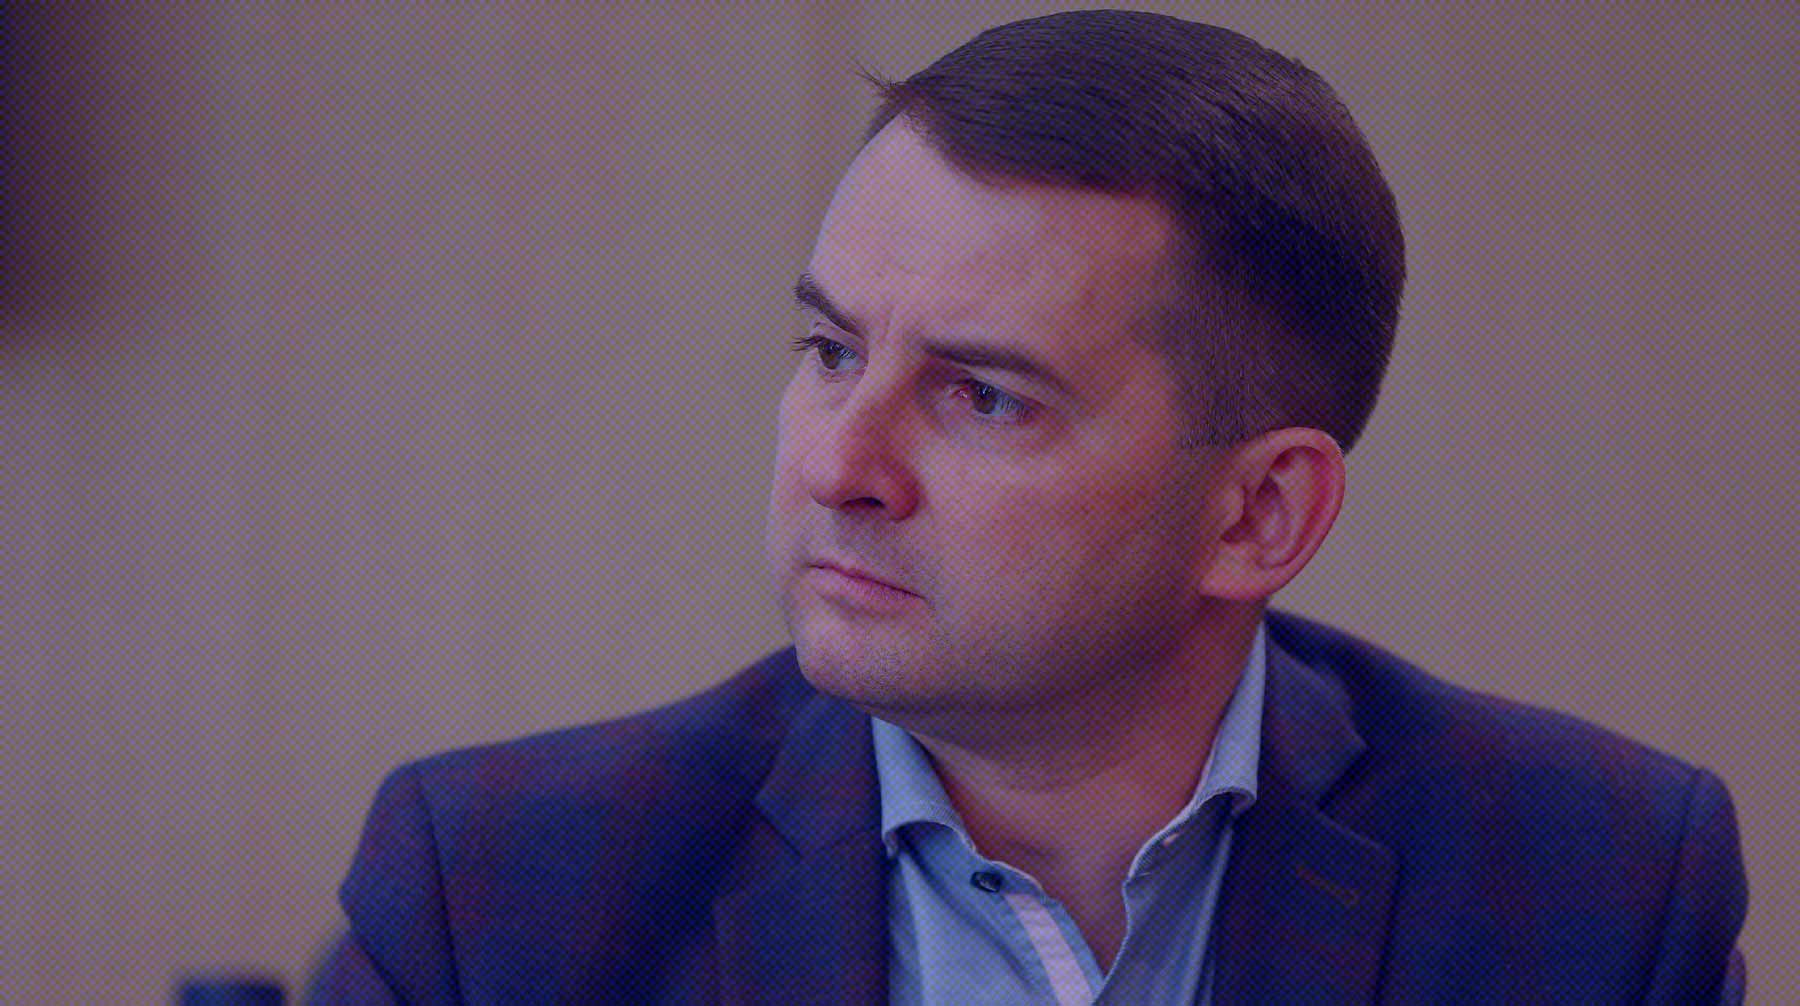 Депутат Госдумы Нилов пообещал бороться с алкогольным лобби после отказа правительства признать спиртное «врагом»